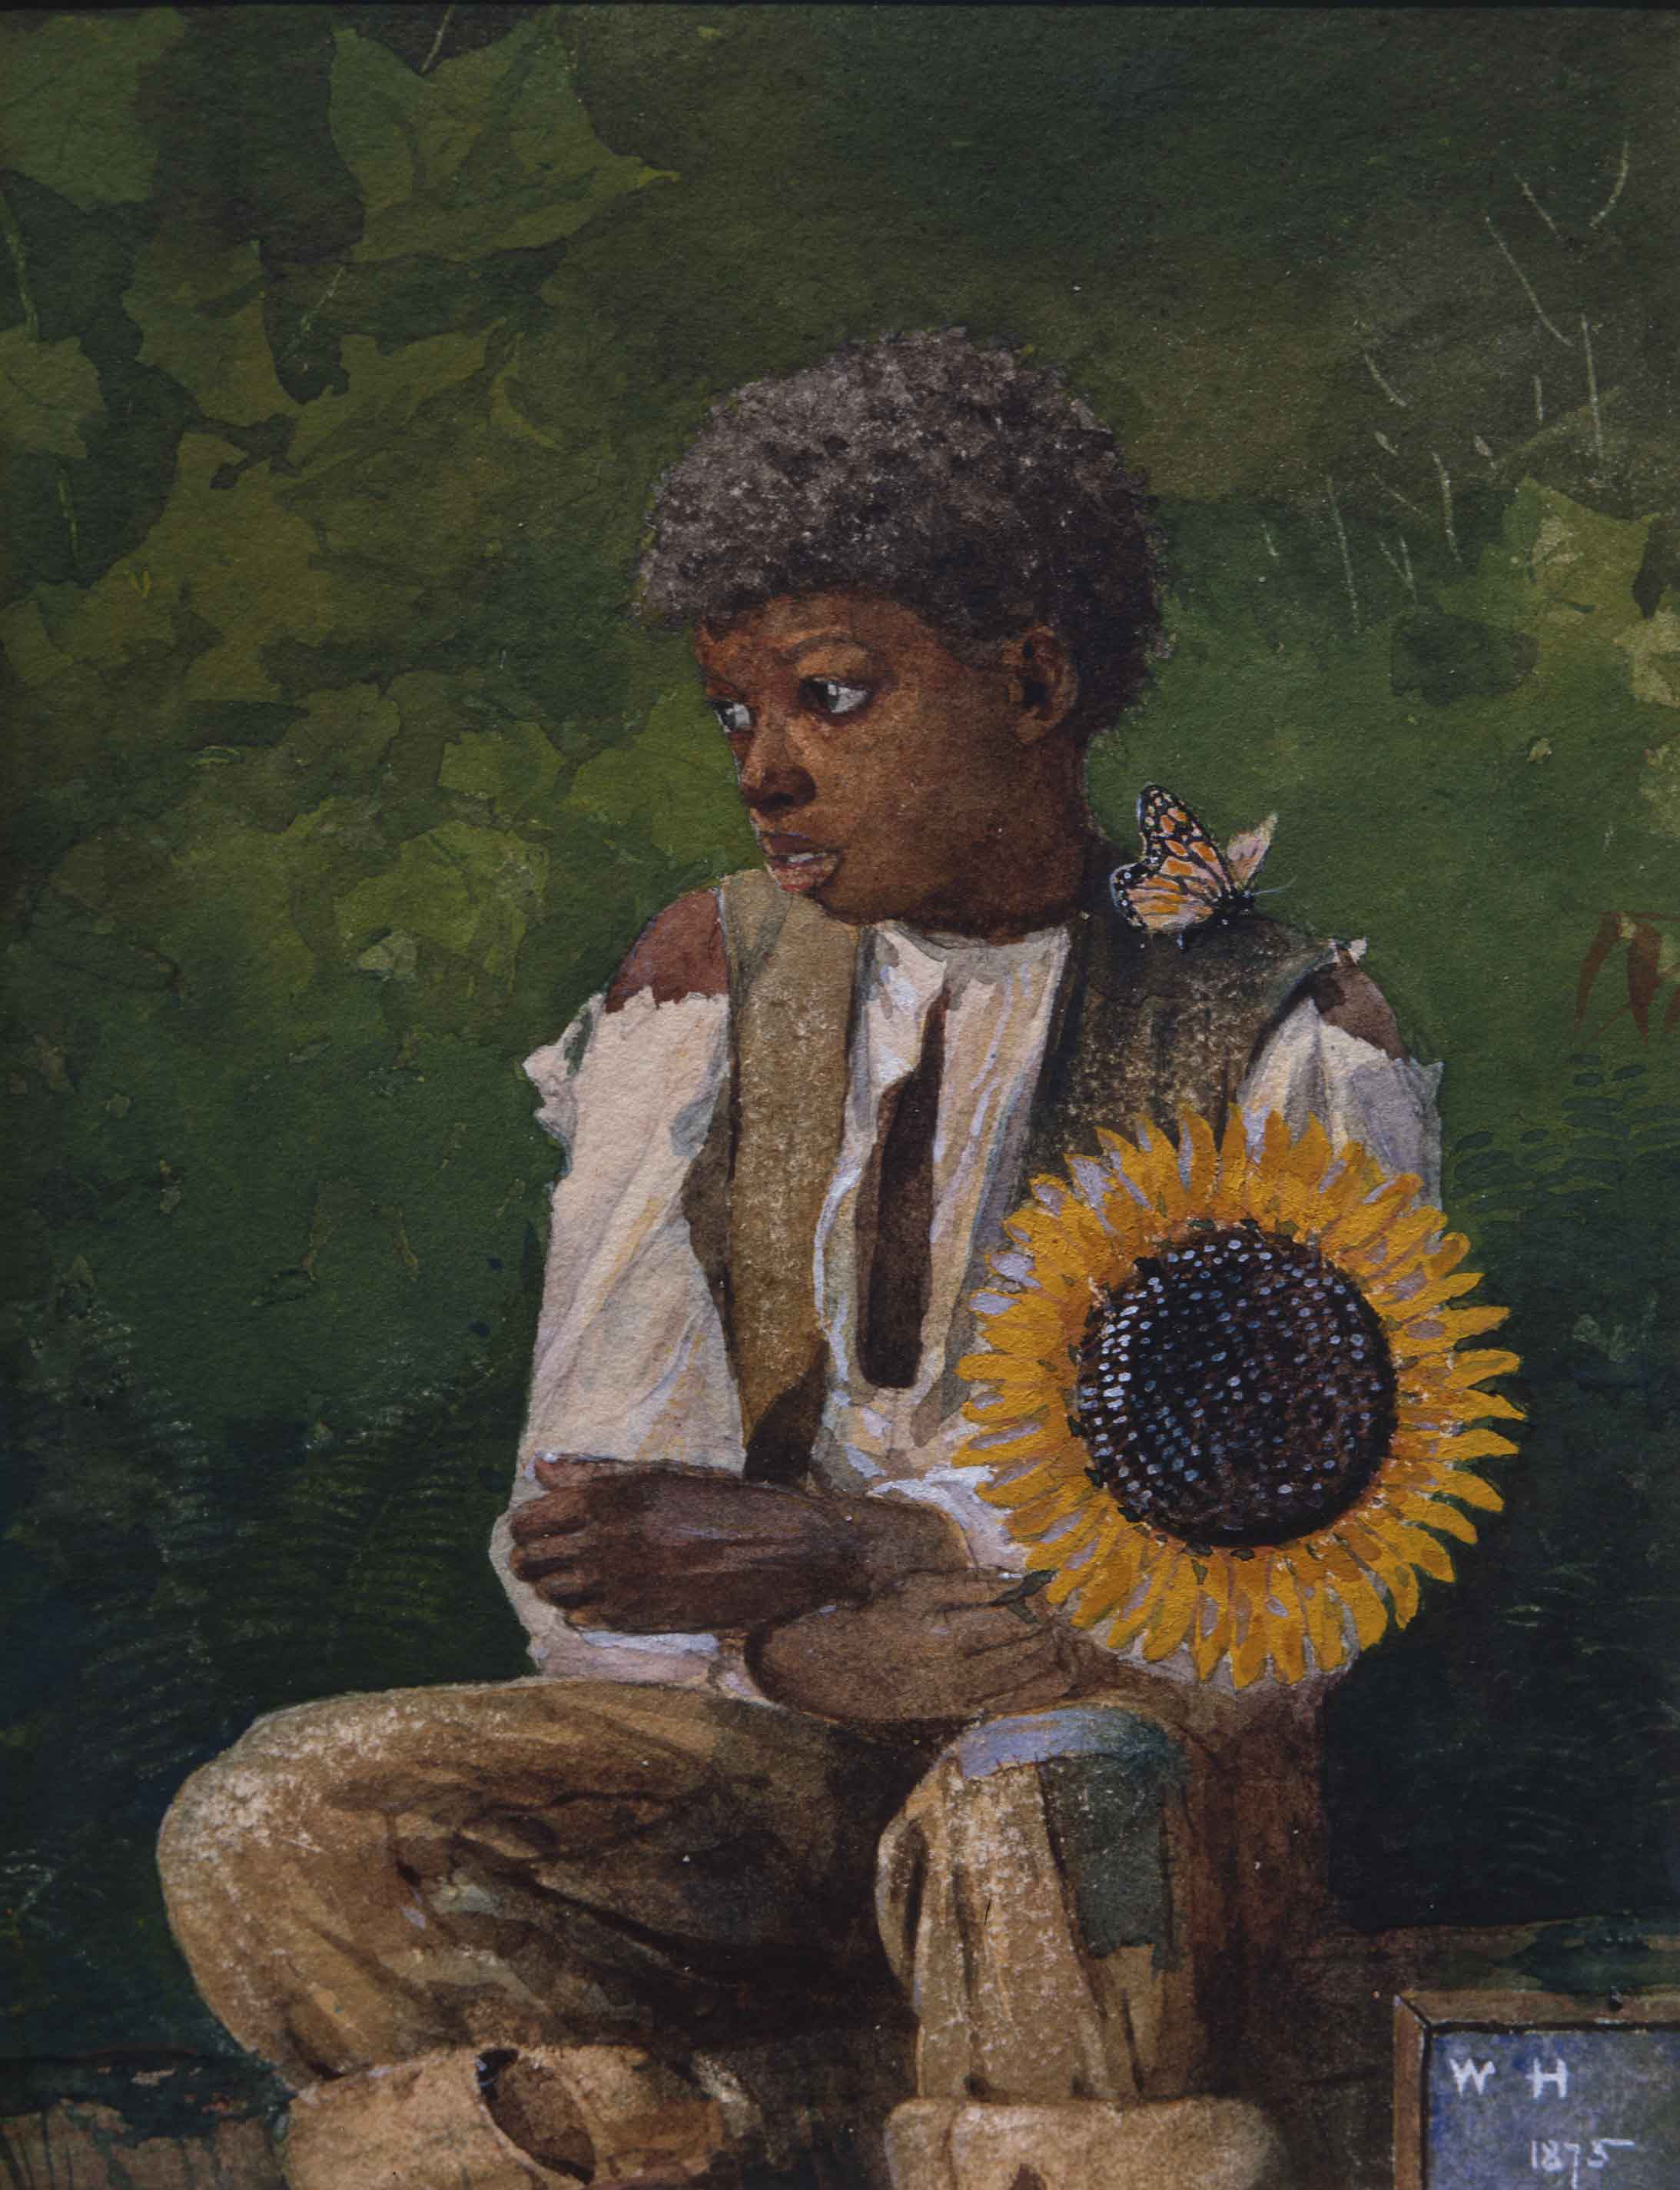 Öğretmene Ayçiçeği Götürmek (orig. "Taking Sunflower to Teacher") by Winslow Homer - 1875 - 19.4 × 15.7 cm 